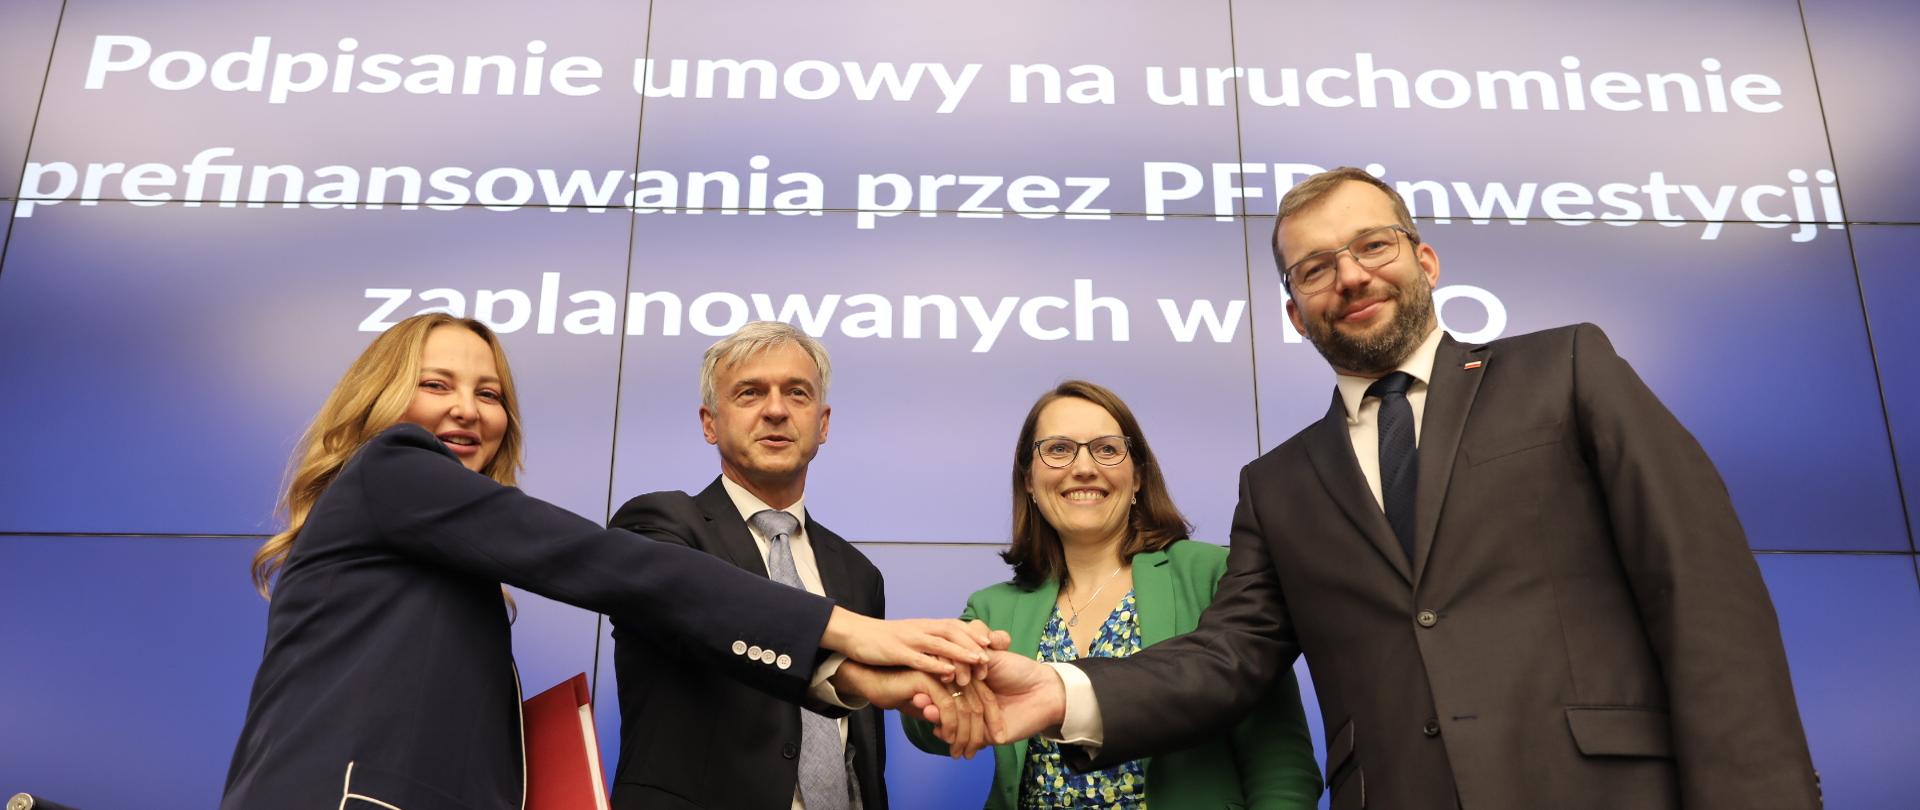 Na zdjęciu m.in. minister finansów Magdalena Rzeczkowska, minister funduszy i polityki regionalnej Grzegorz Puda oraz wiceprezes PFR Bartłomiej Pawlak.